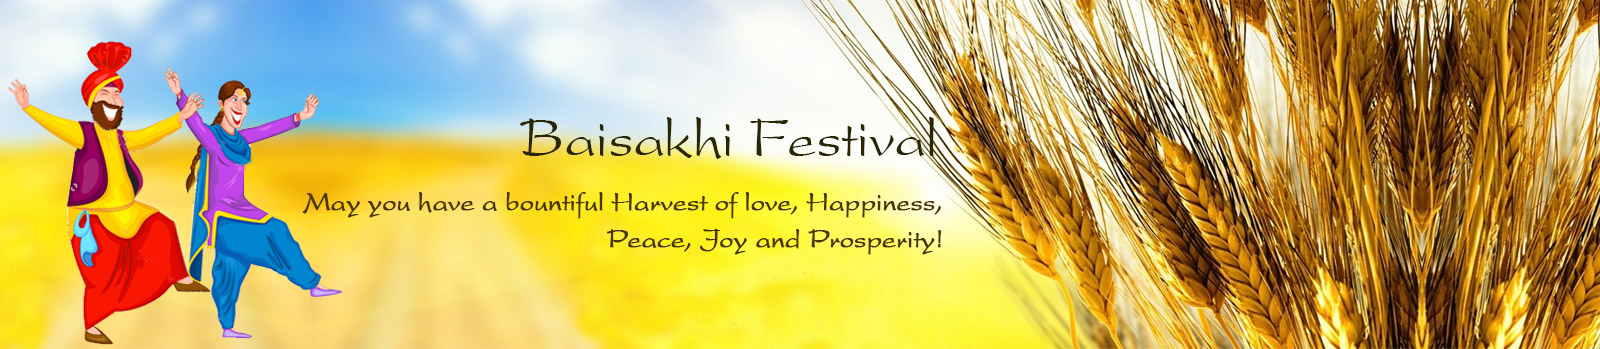 Baisakhi Festival